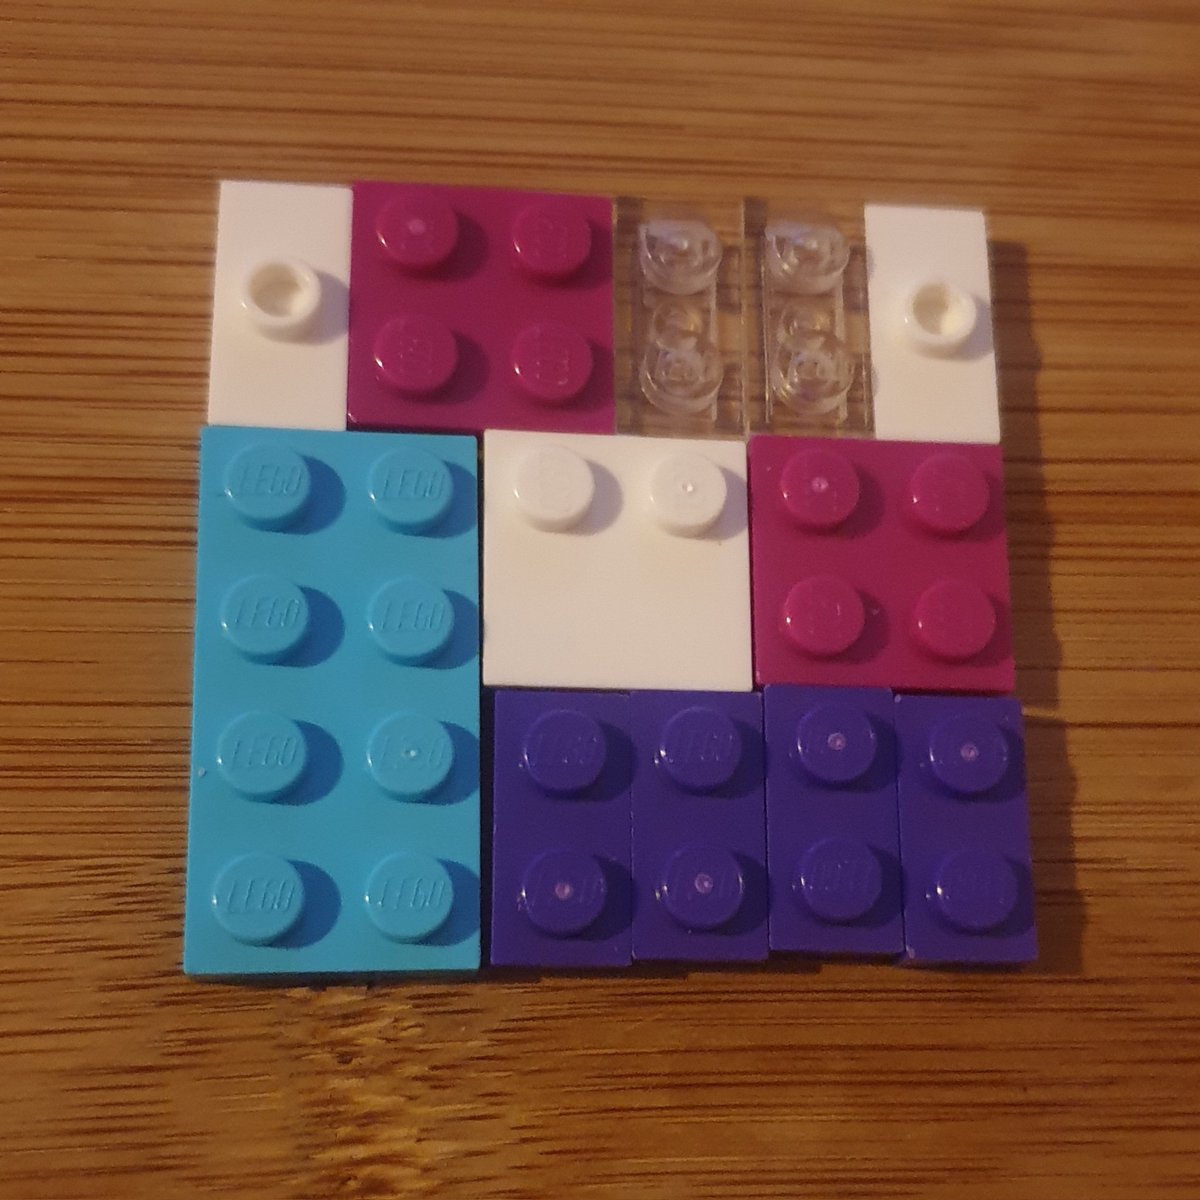 #legopuzzle #4  square puzzle - from  #fiveminutelegobuilds #book 

Build 113 of over 100 ... 

#lego #legobuild #legobricks #legoideas #legospace #legophotography #legophoto #legomakes #minilegomakes #legobook #legobookandbricks @lego  #legoanimalface #5minutelego #legobuilding